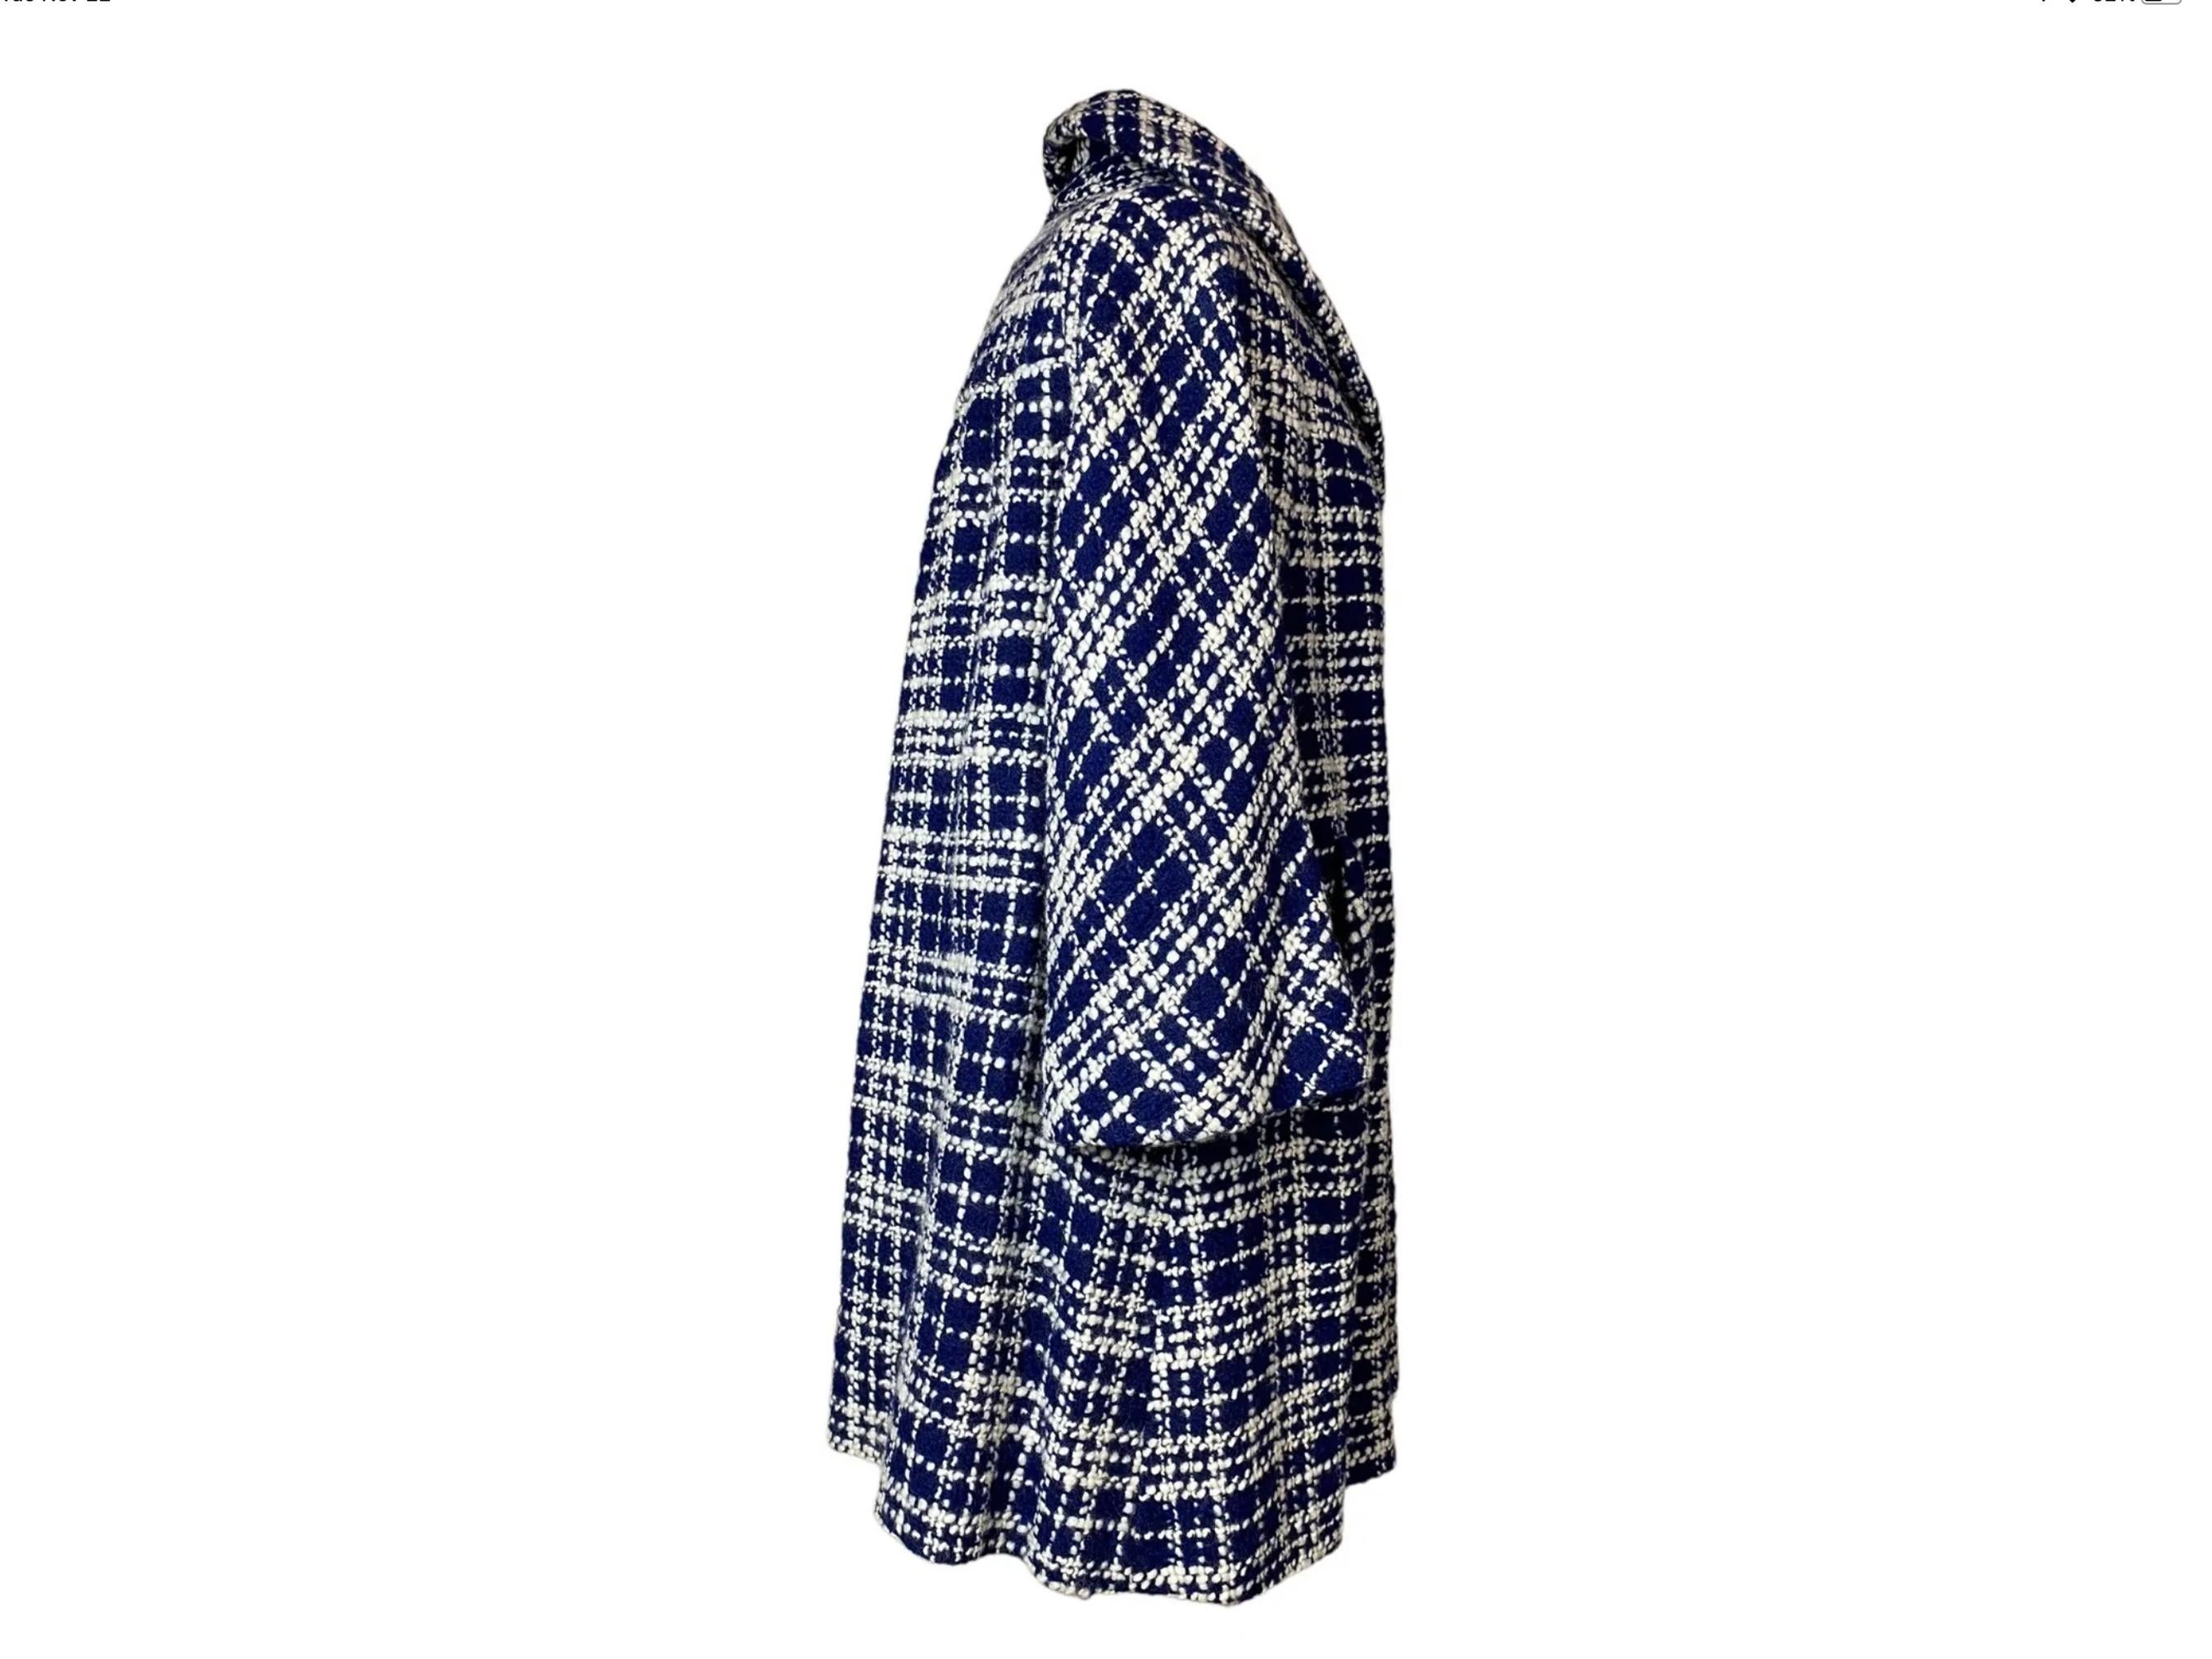 Il s'agit d'un fabuleux manteau en laine de poids moyen de la maison de design vintage Lilli Ann, qui fait l'objet d'une collection. Le design est une silhouette intemporelle de manteau swing en laine écossaise classique bleue et blanche. Le col